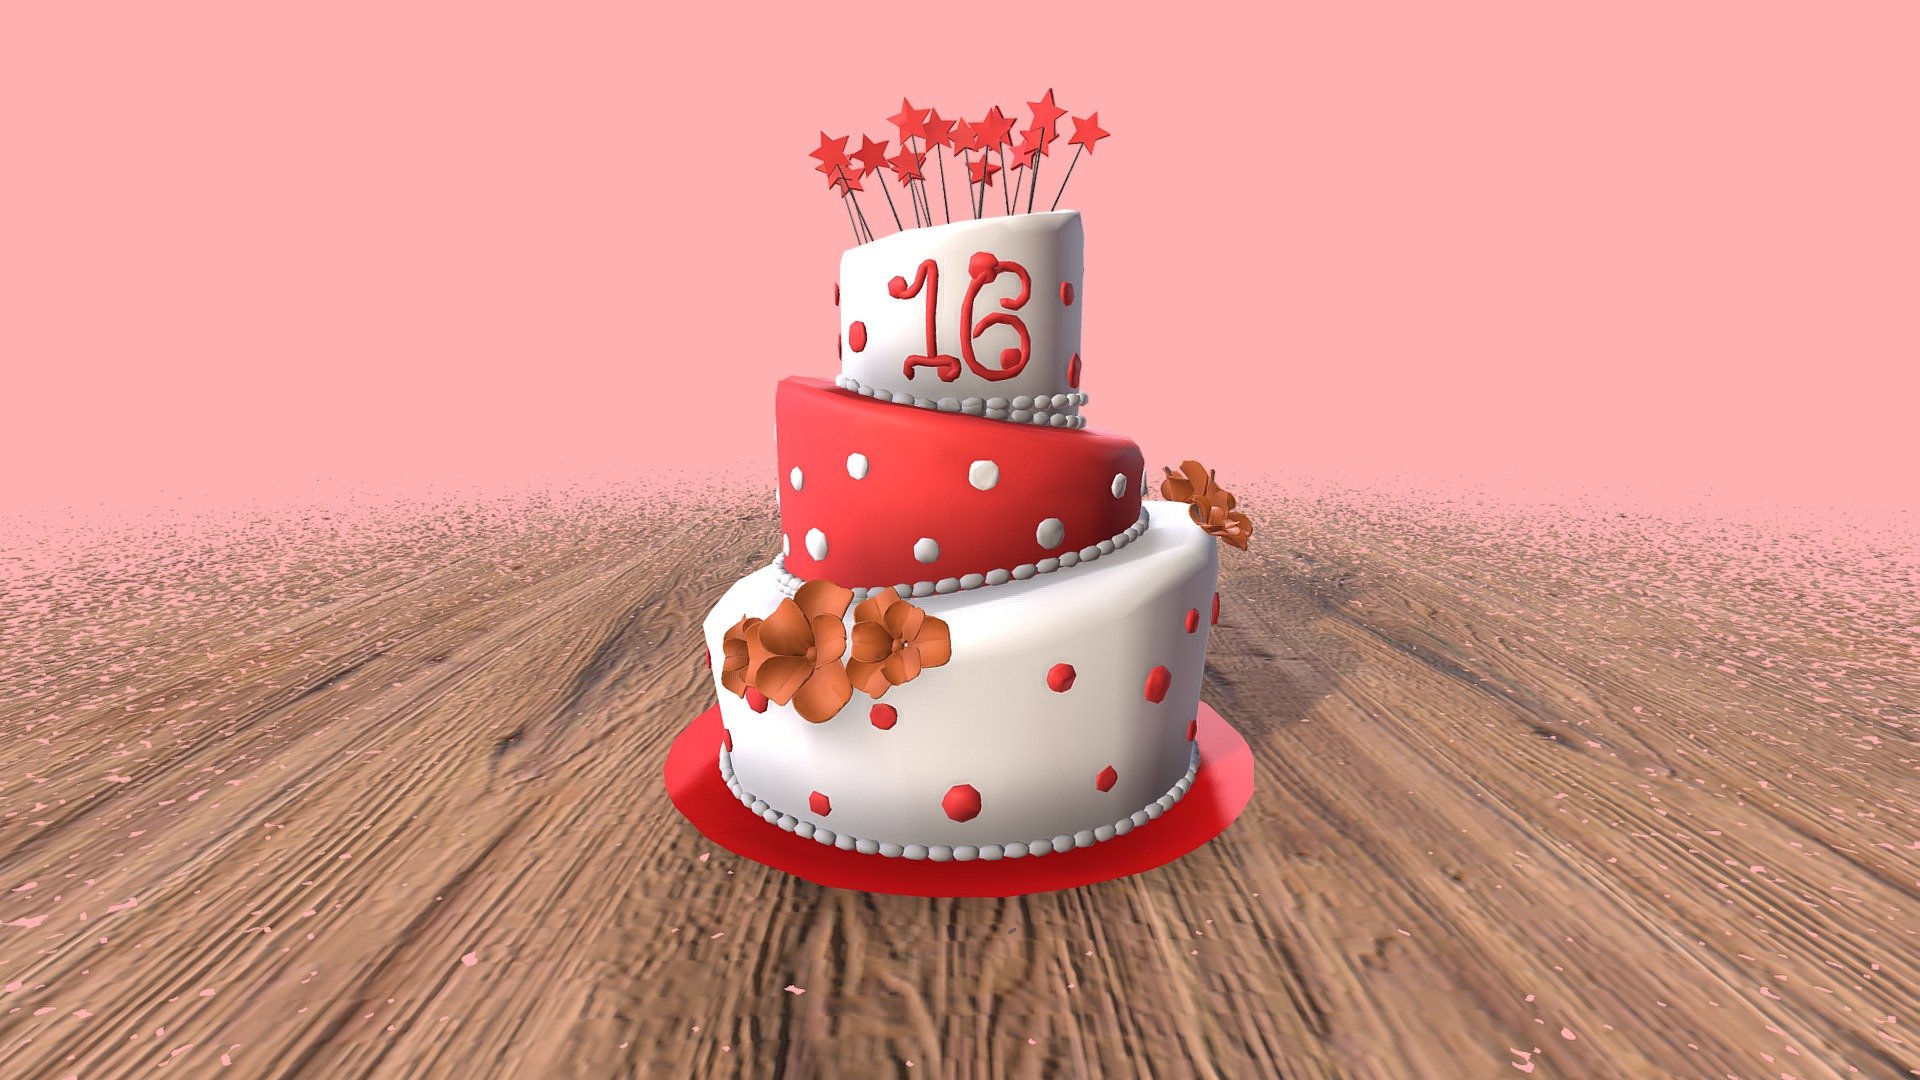 Cake 3D Models for Free Download  Open3dModel